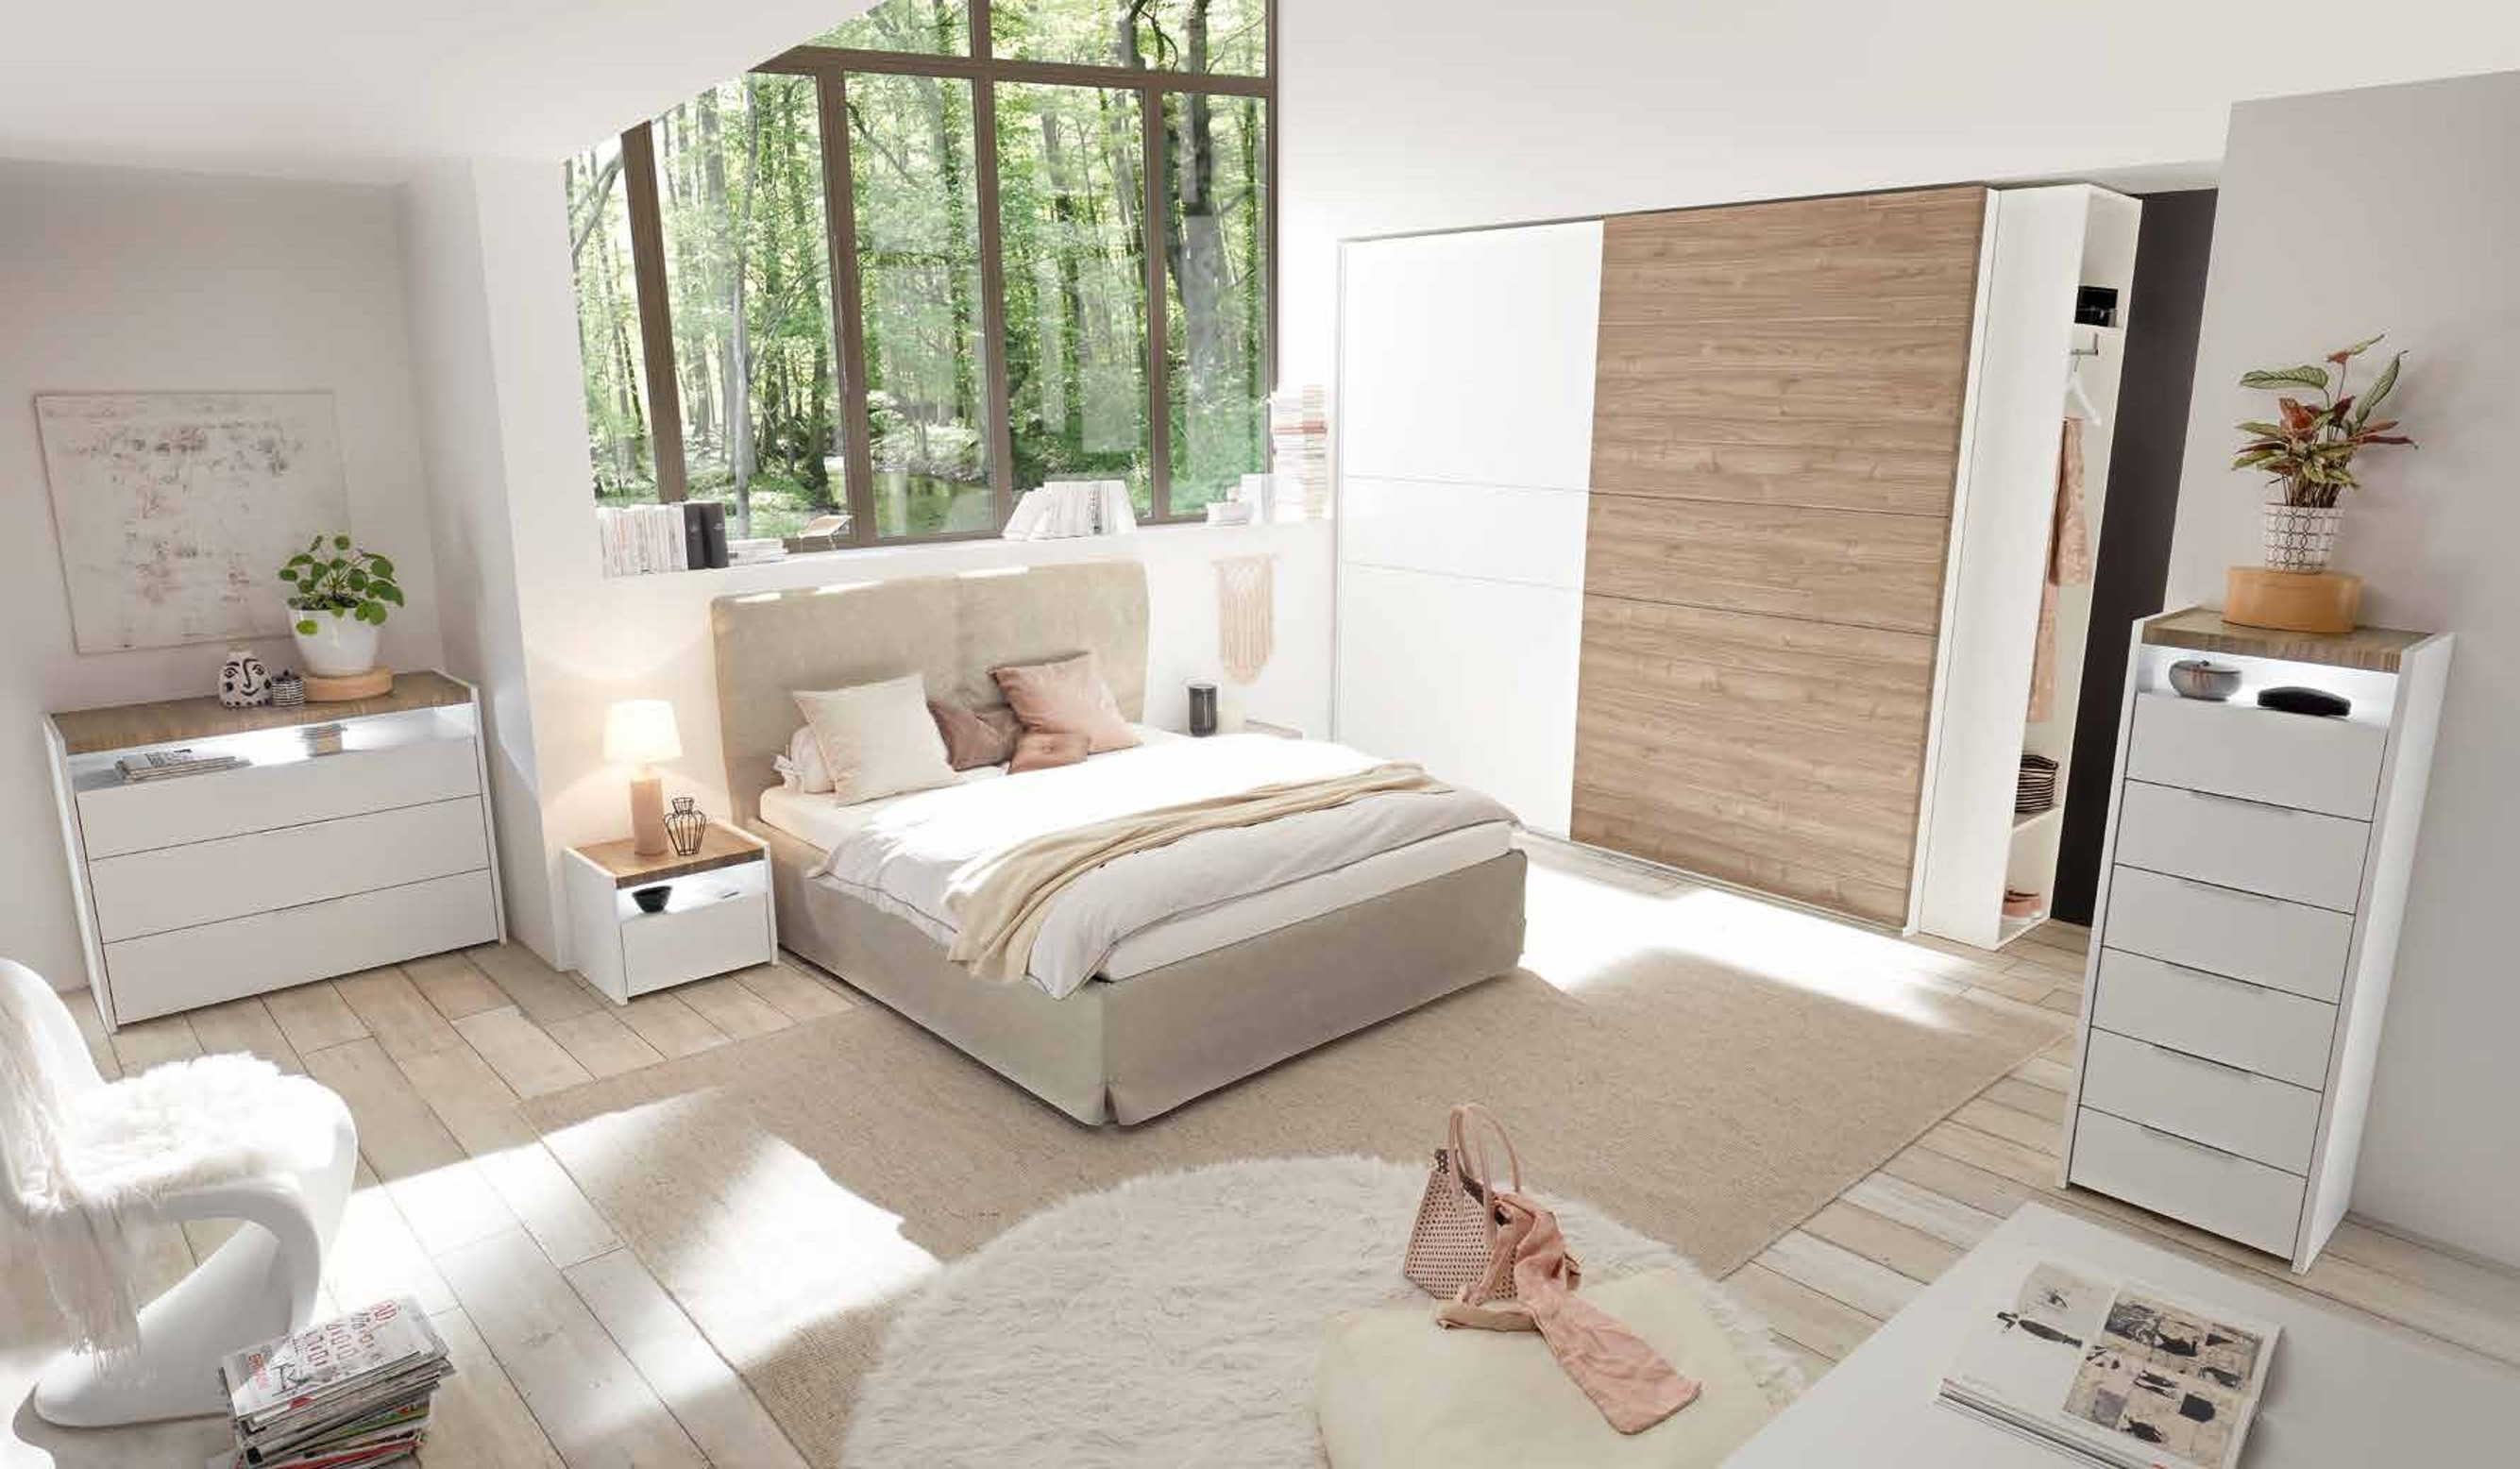 Meubles pour chambres rangement bois design